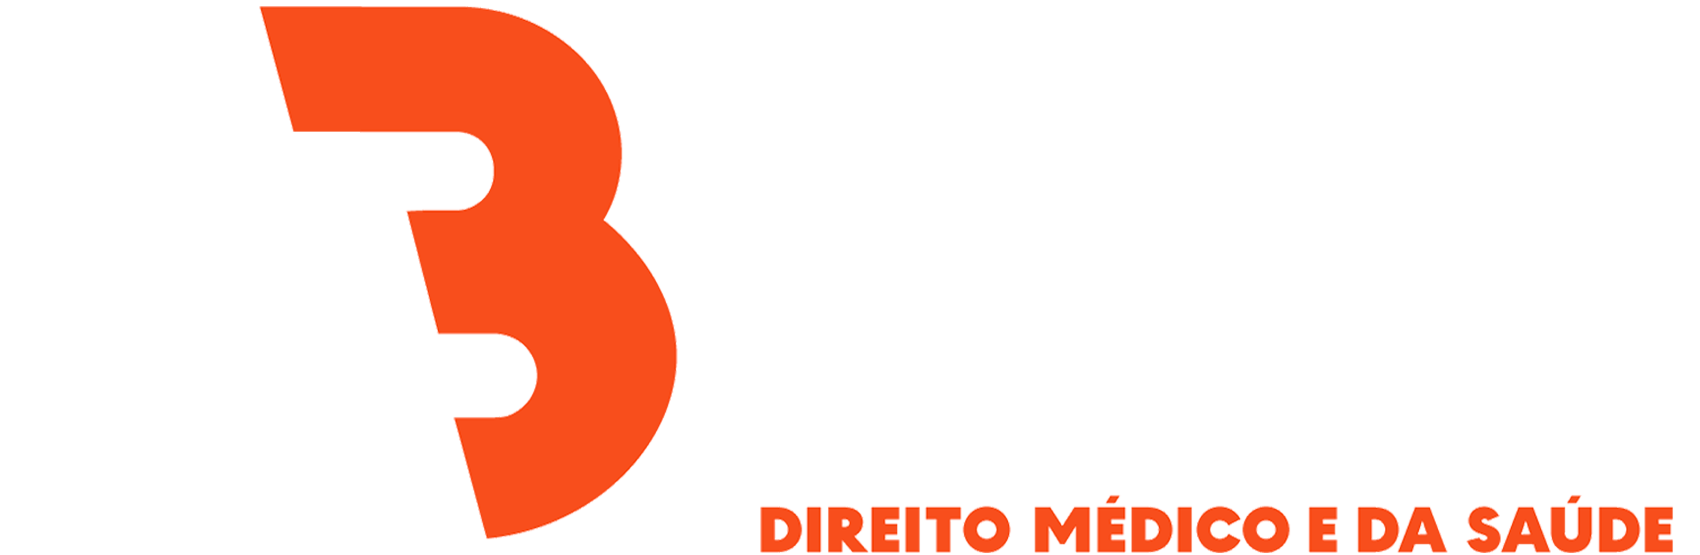 Dr.Edmilson Barros - Logo png